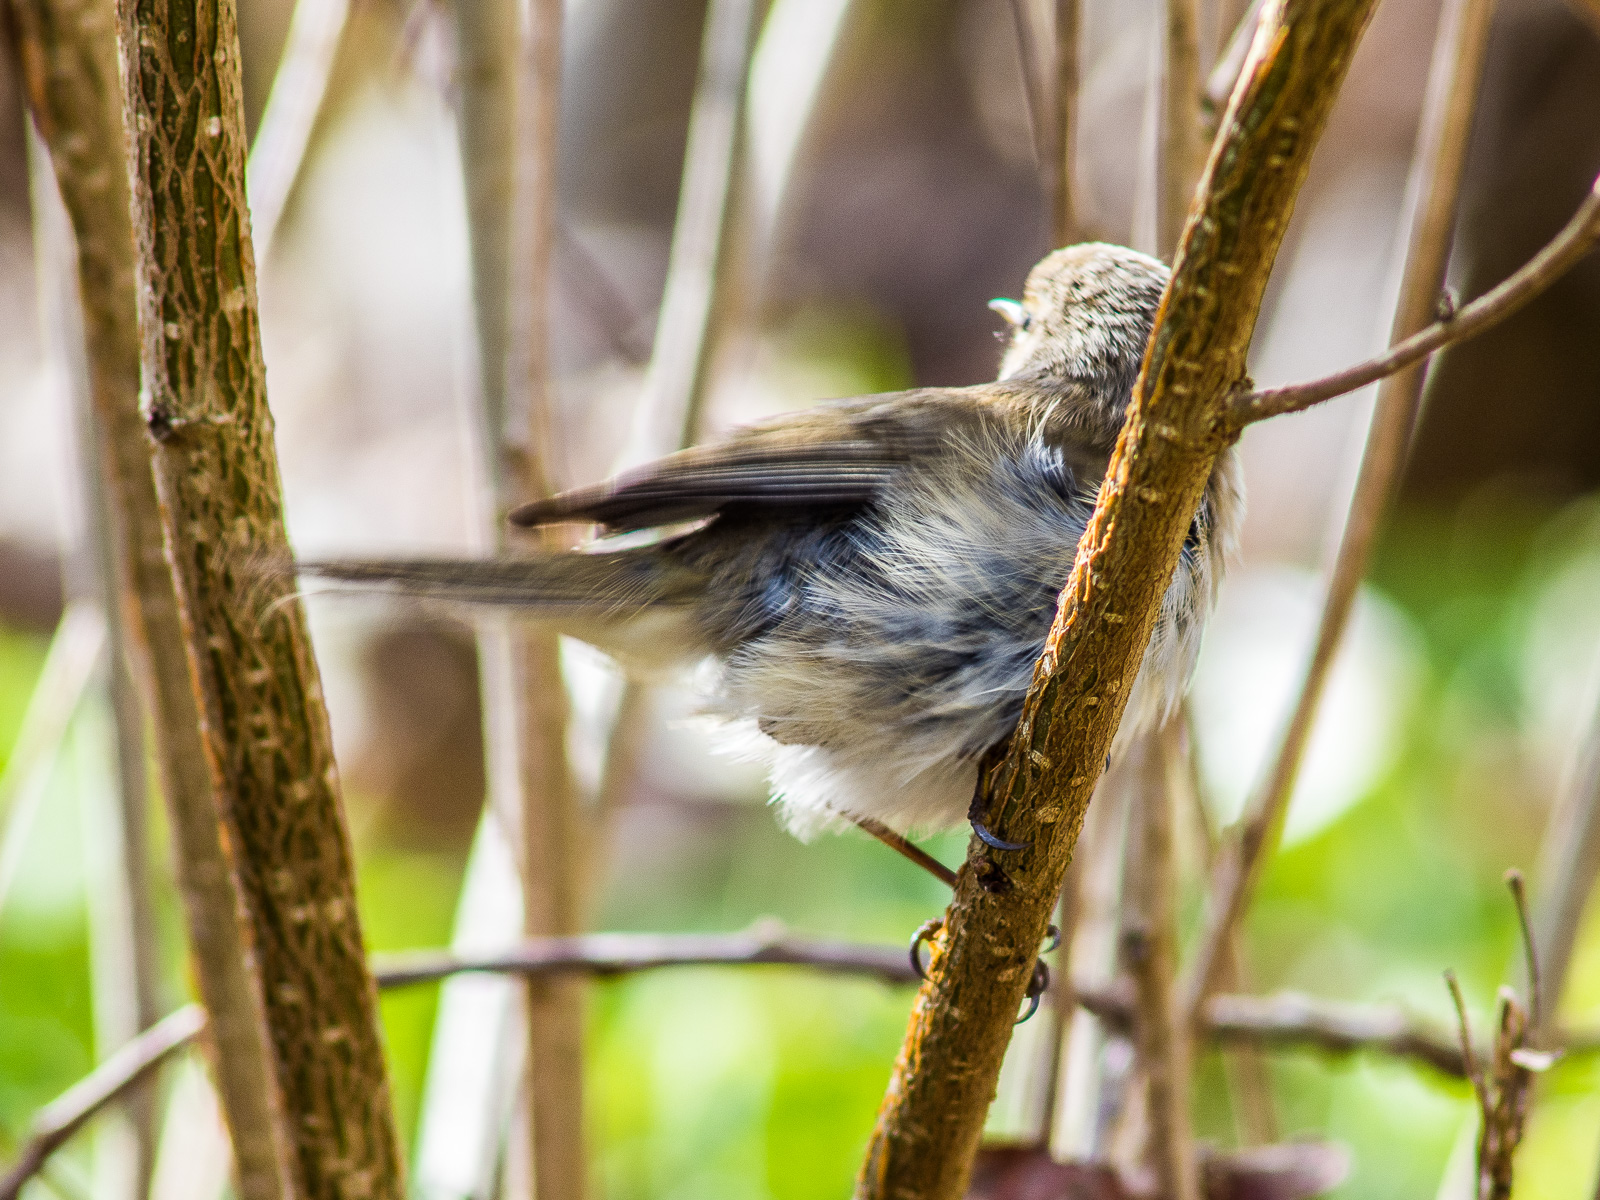 Ein kleiner, ca. spatzengroßer Vogel in Astgewirr, man sieht ihn von hinten, das weiße Bauchgefieder ist vom Wind aufgebauscht